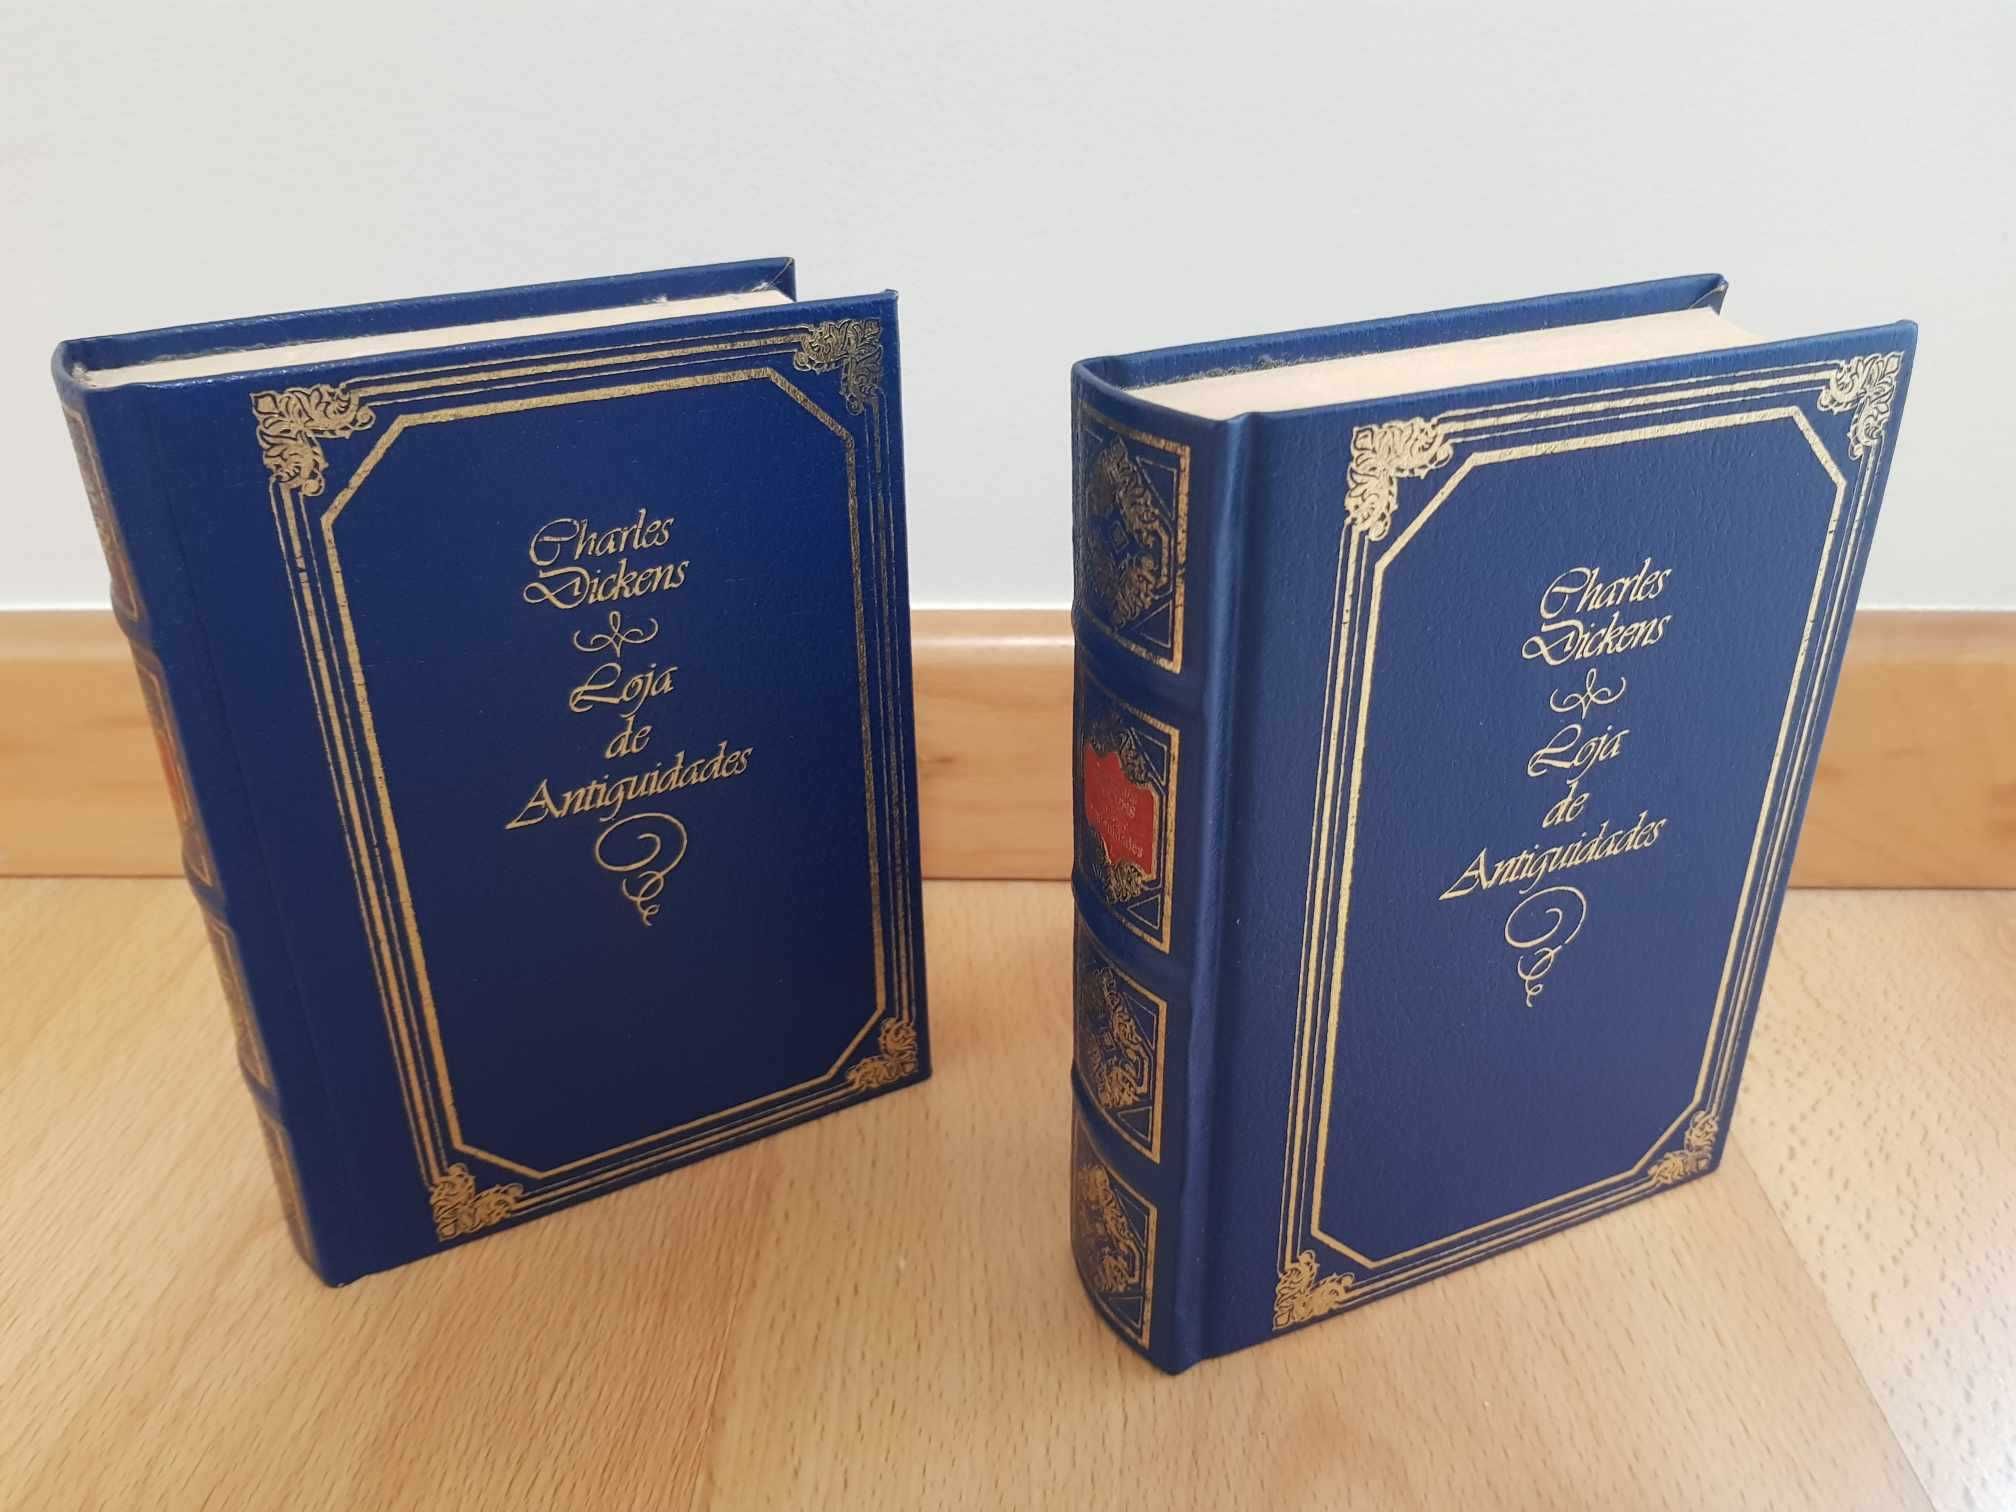 Livro de Coleção "Loja de Antiguidades" (II Volumes), Charles Dickens